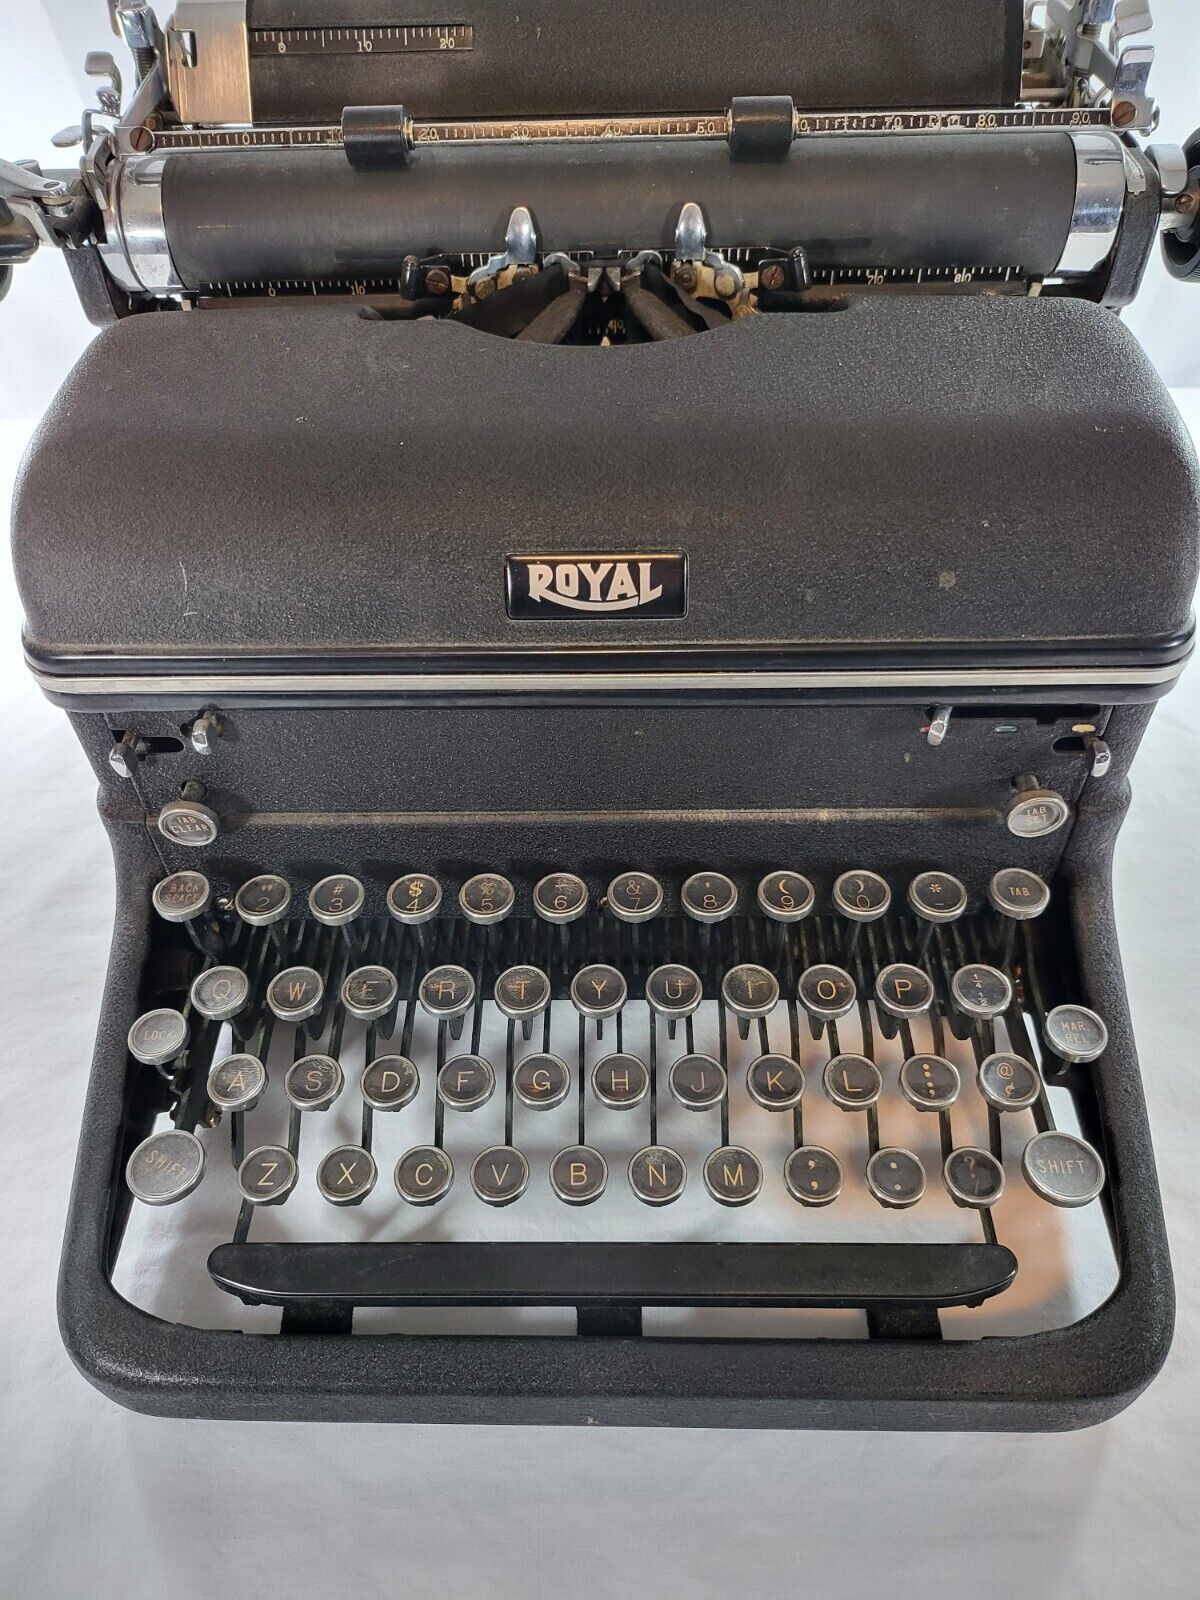 1939 ROYAL Typewriter Company Magic Margin Touch Control KTM Manual Typewriter